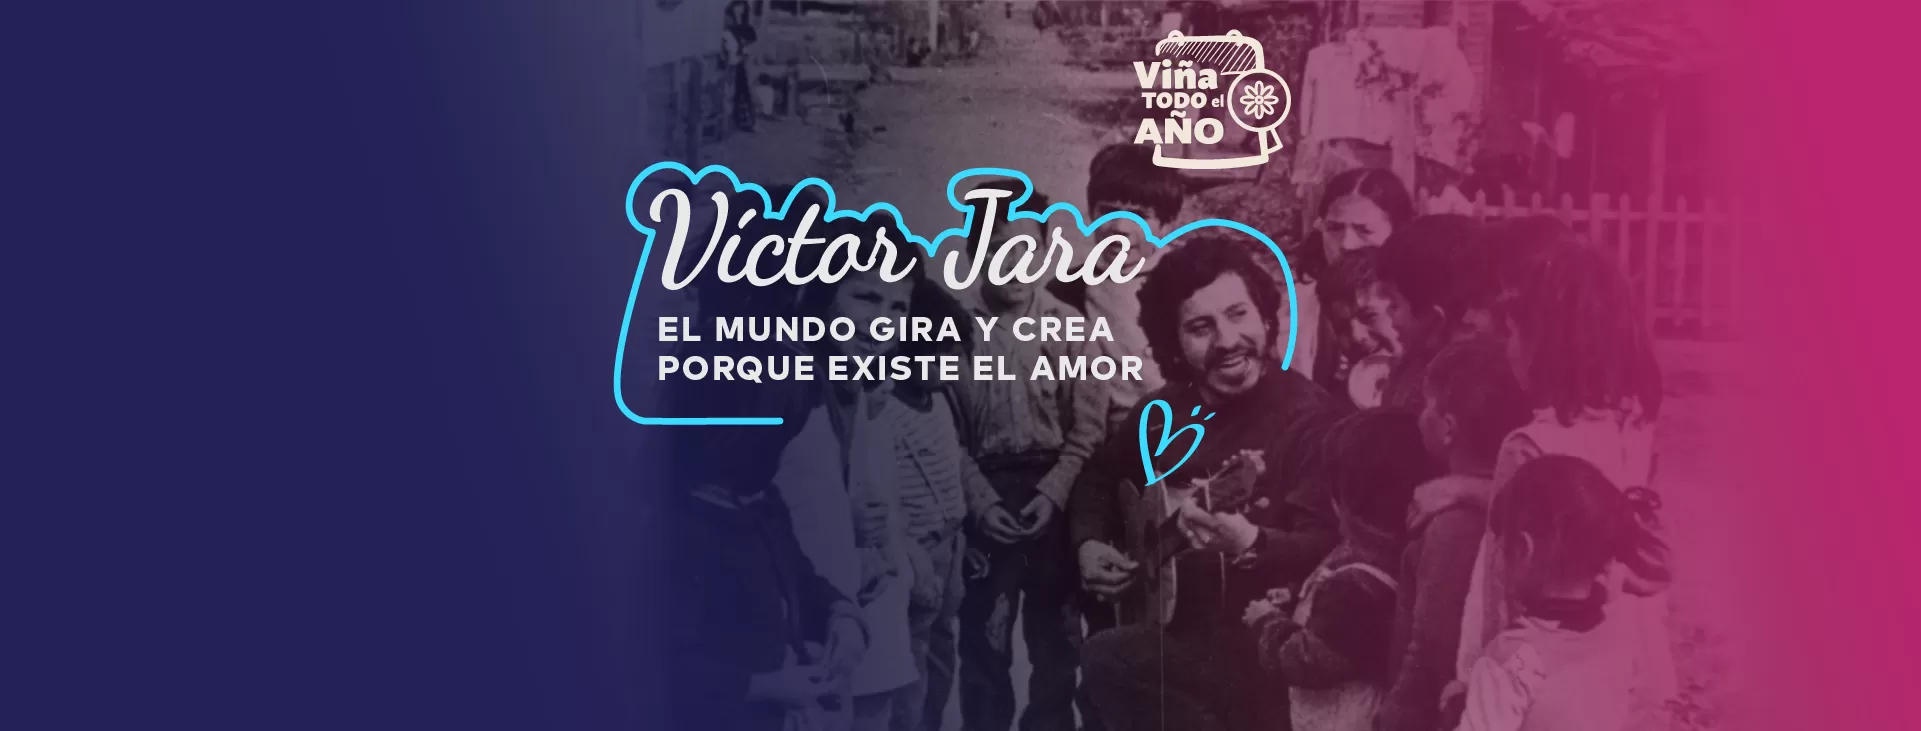 Visita Vina Exposicion Victor Jara